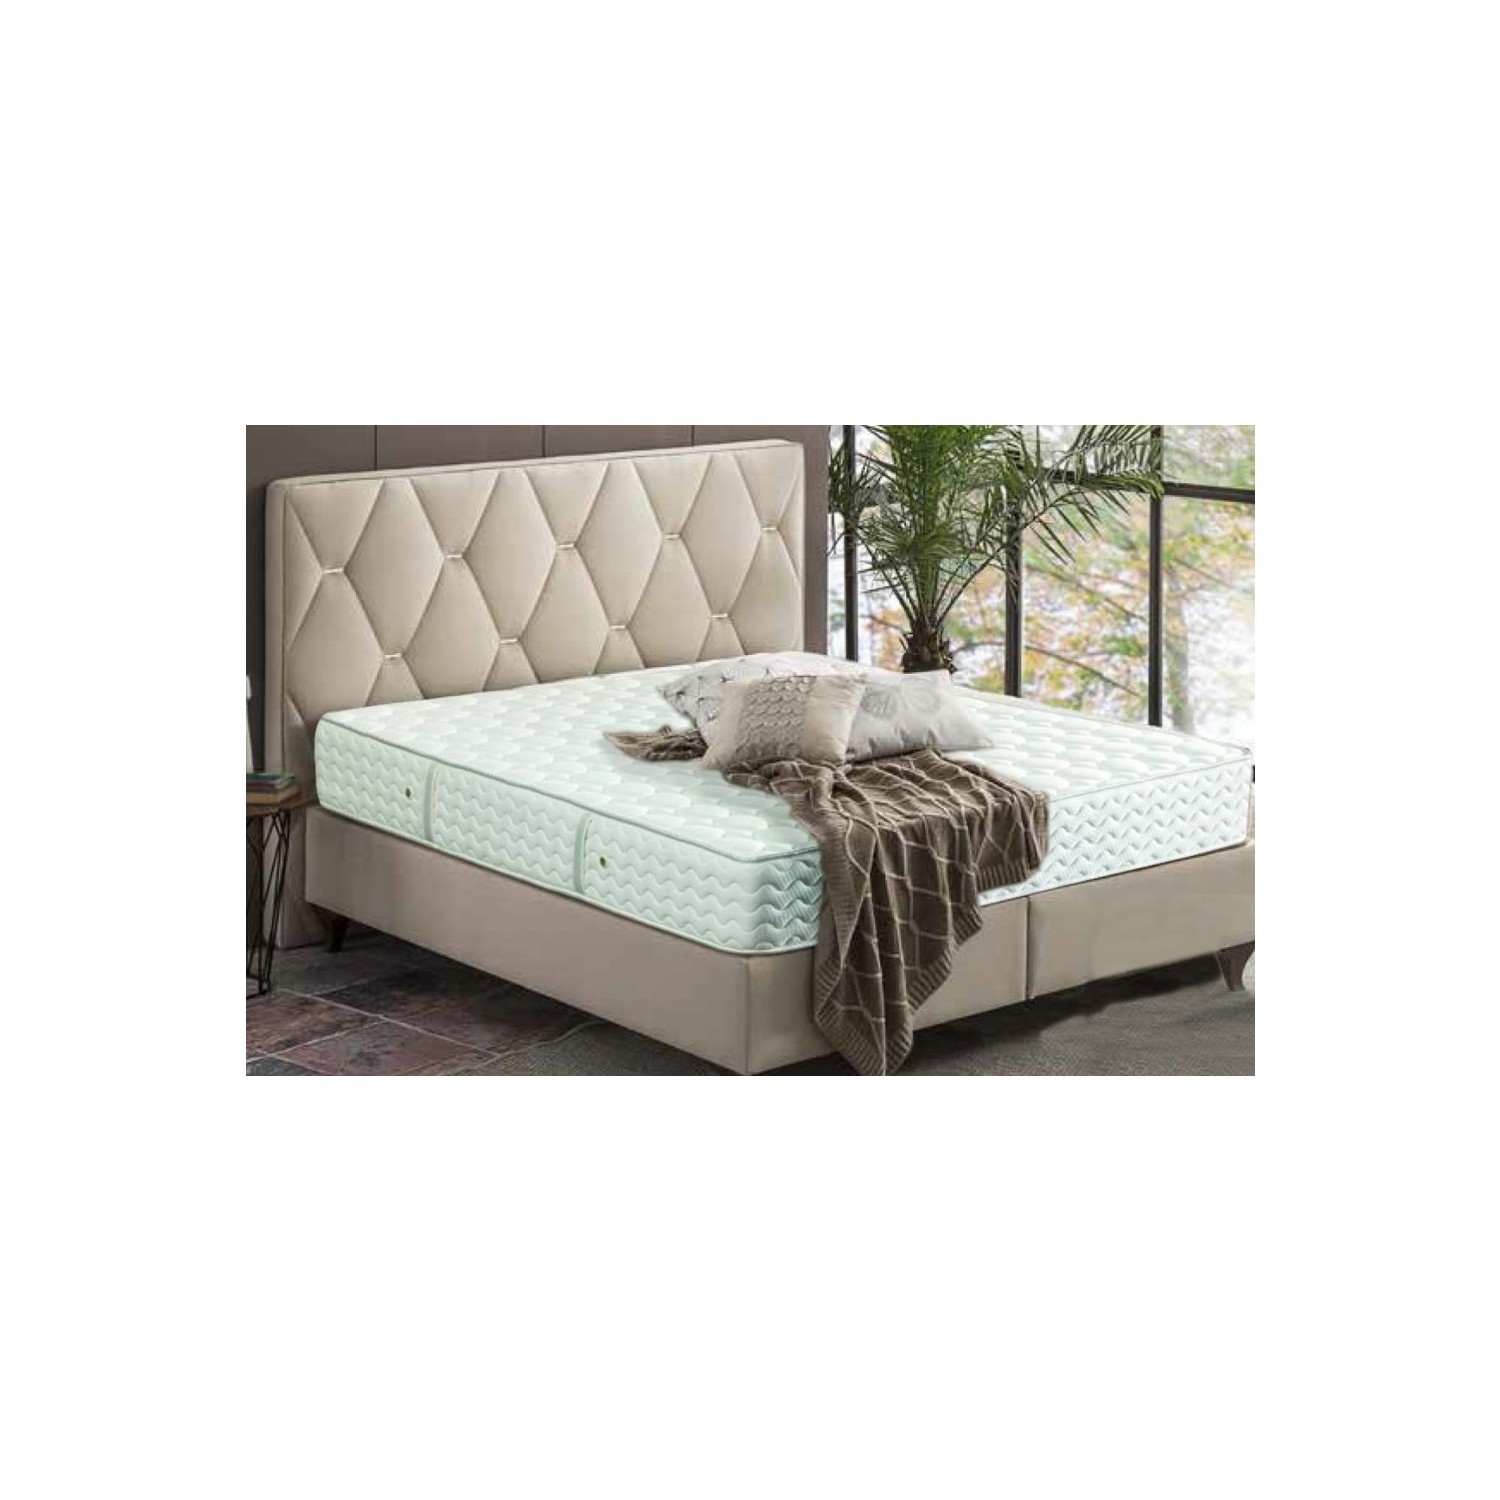 işbir yatak viscostar comfort 160x200 fiyat